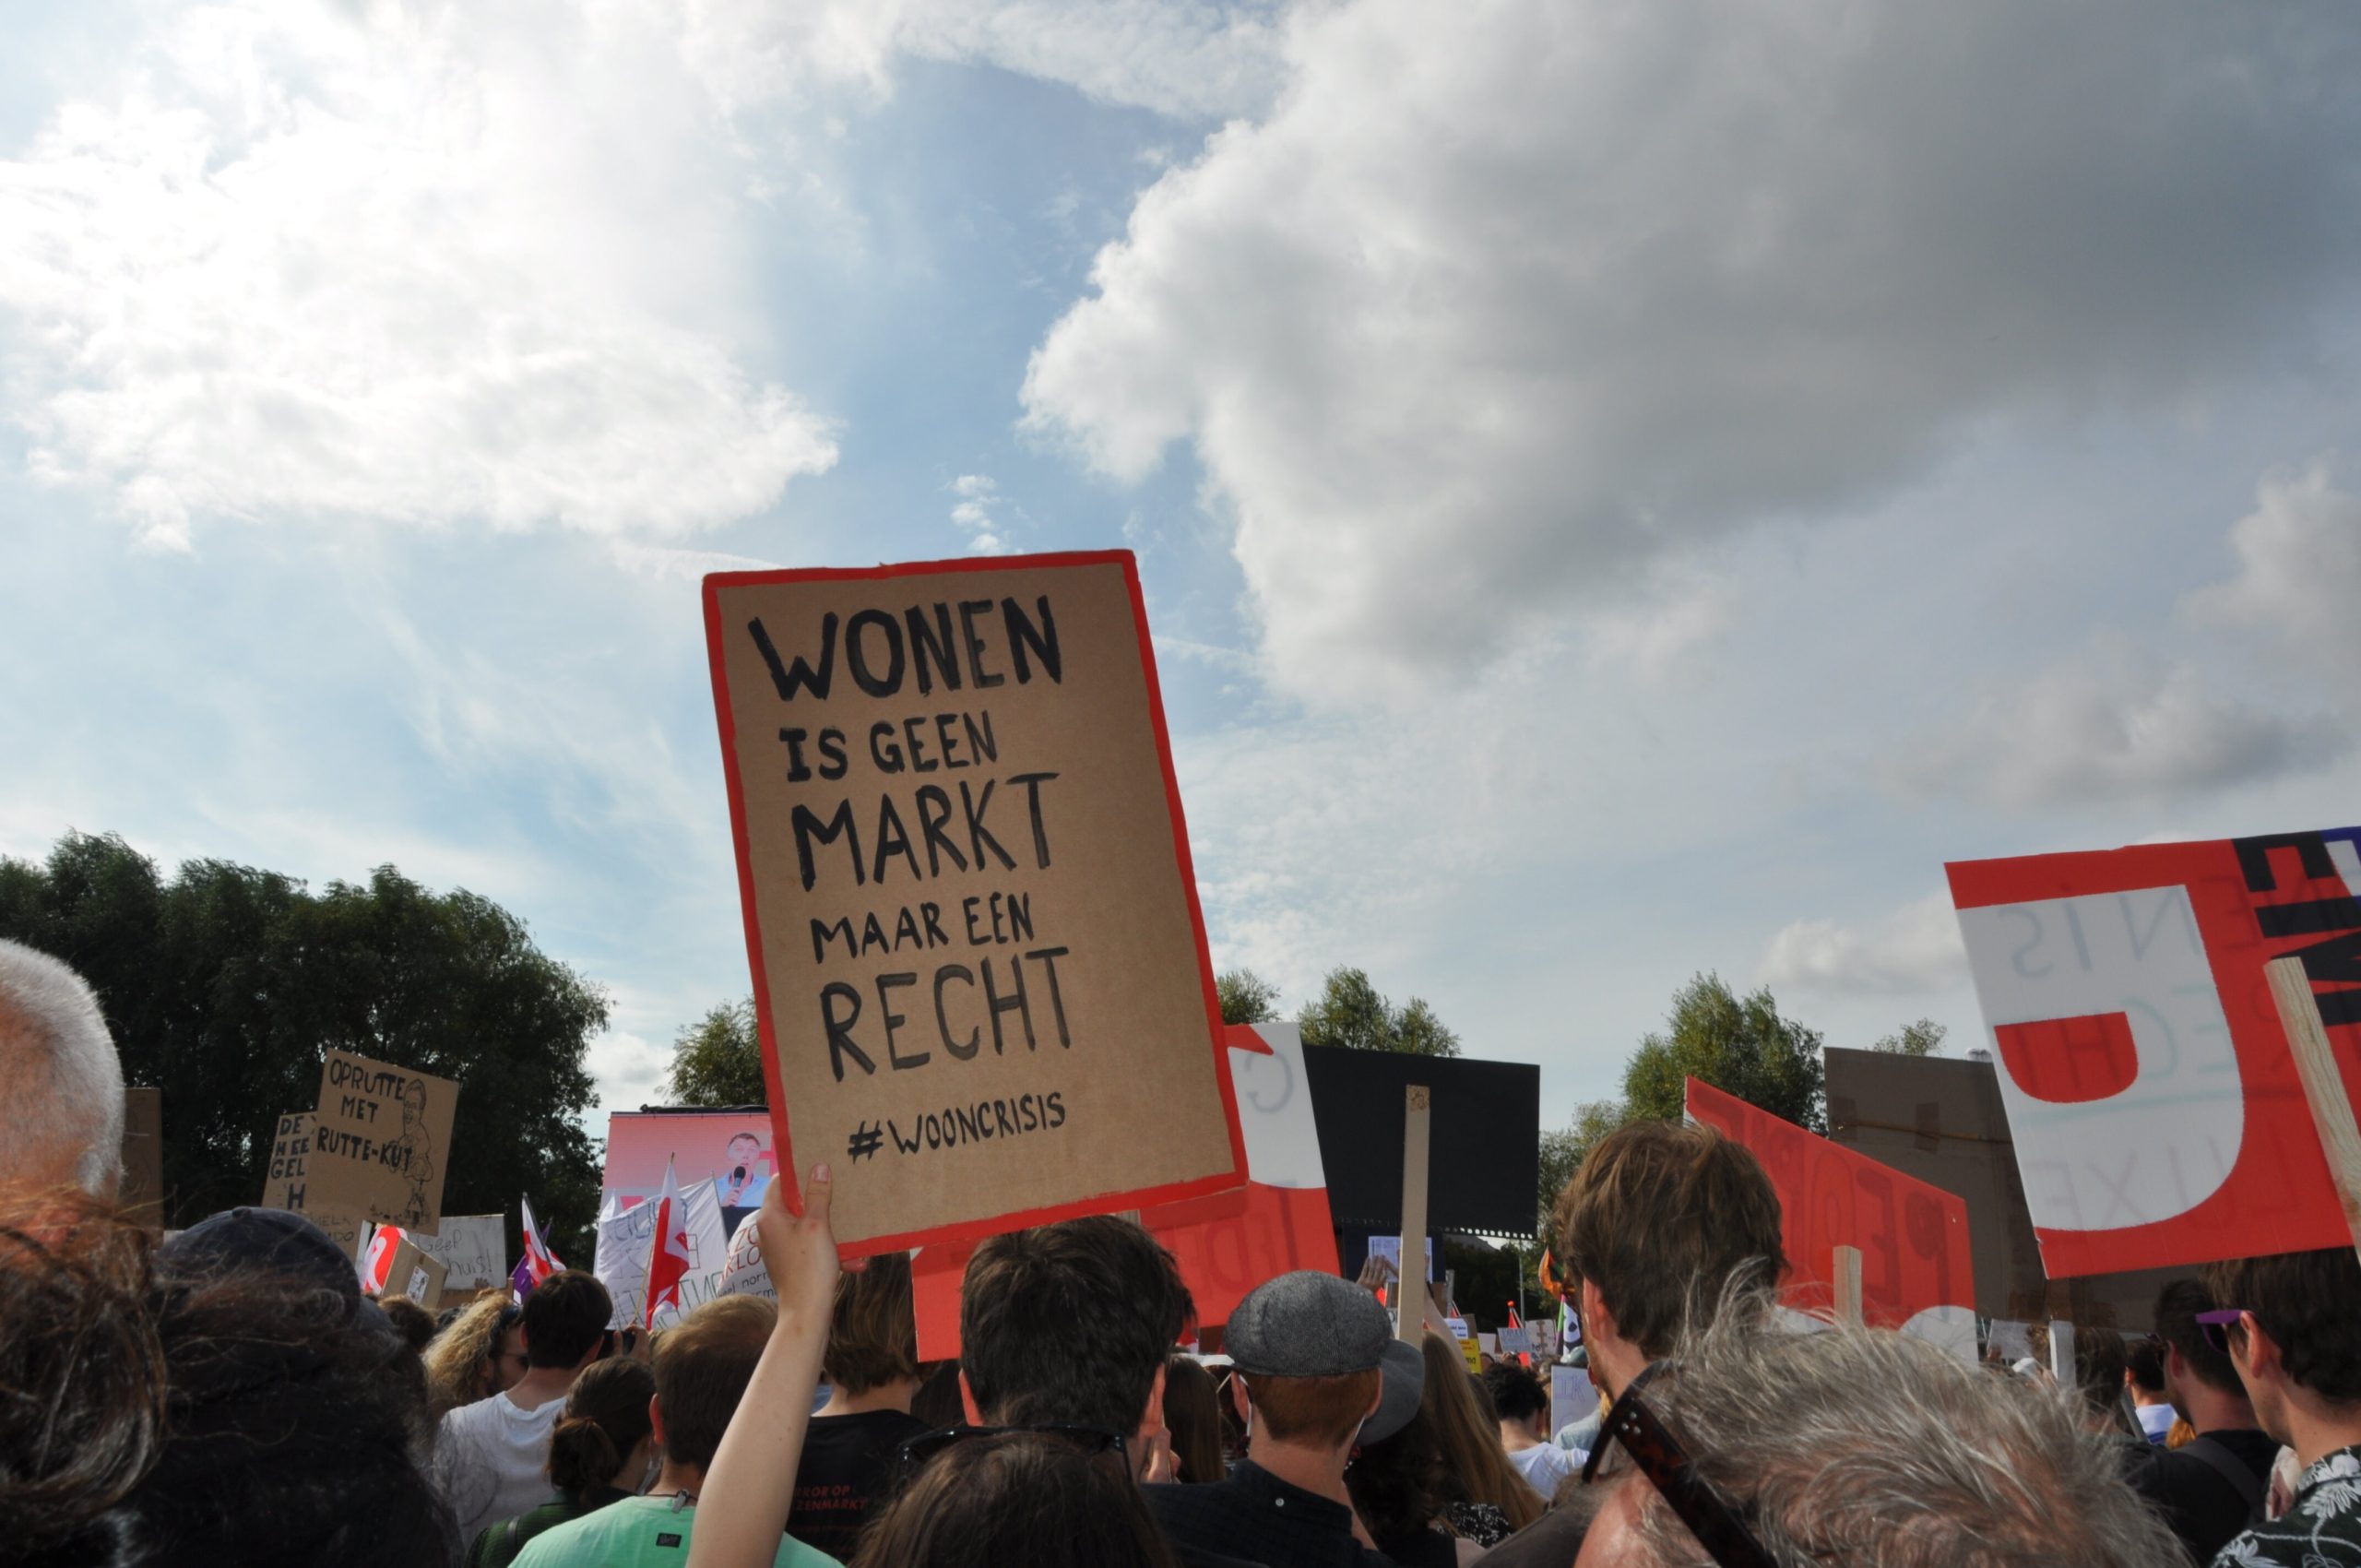 Protest actie, met bordje waarop staat "wonen is geen markt maar een recht".